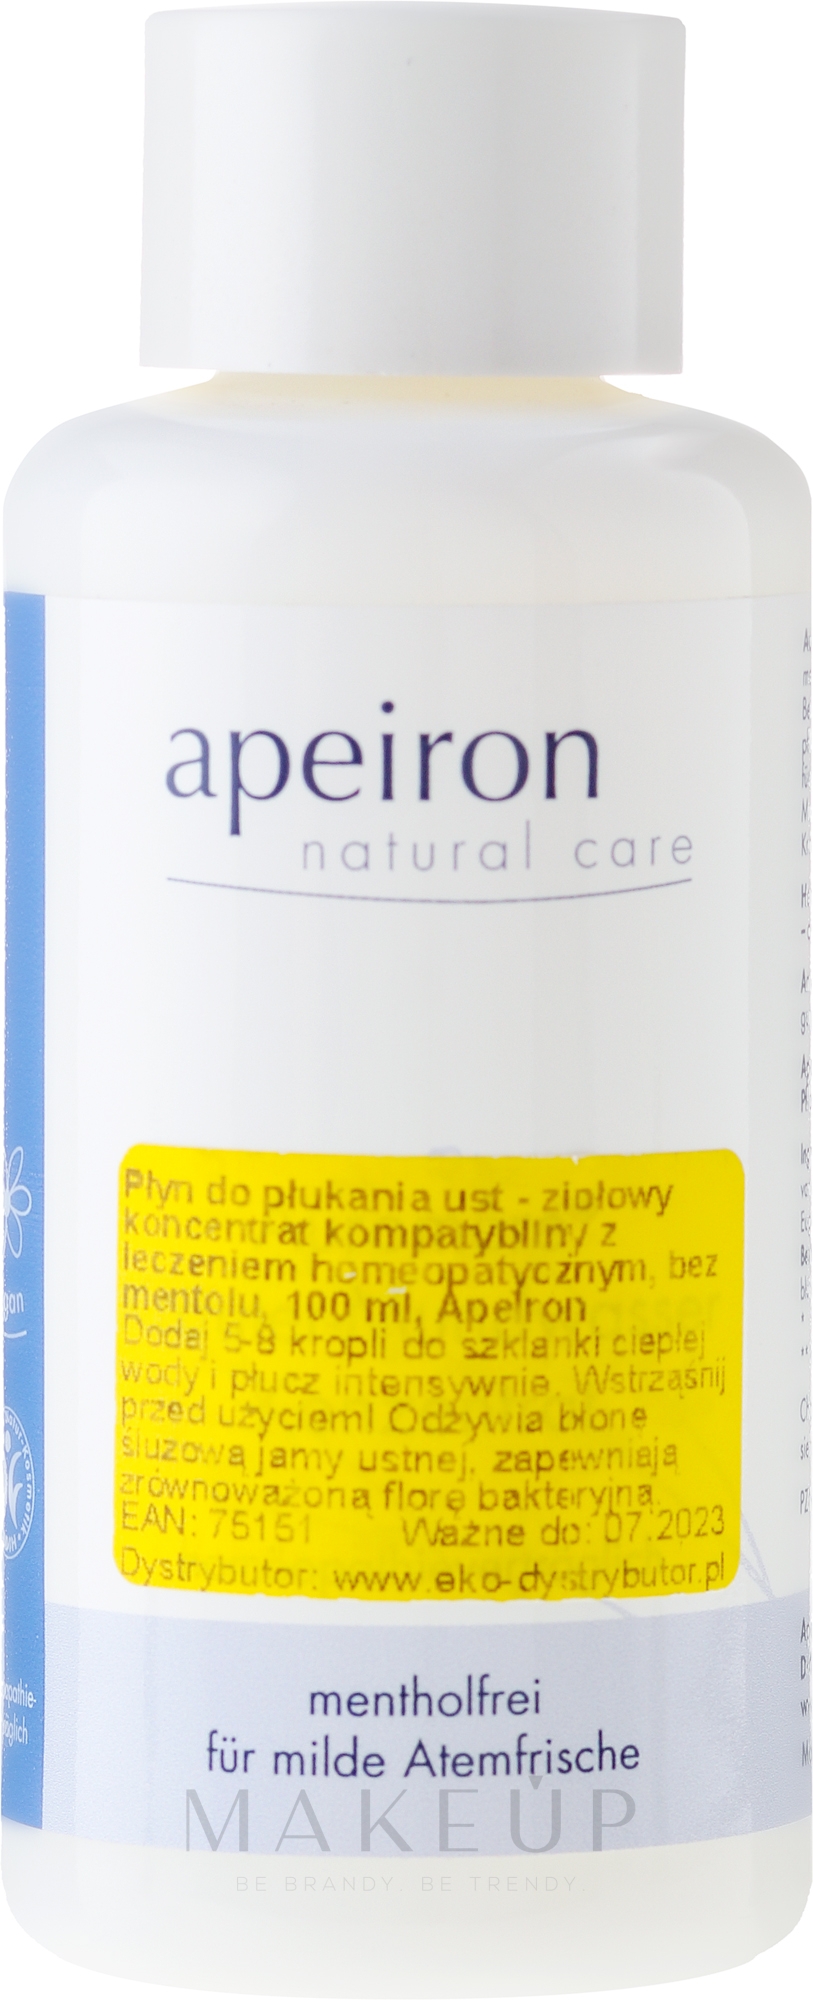 Mentholfreie Mundspülung für milde Atemfrische - Apeiron Auromere Herbal Concentrated Mouthwash Homeopathic — Bild 100 ml